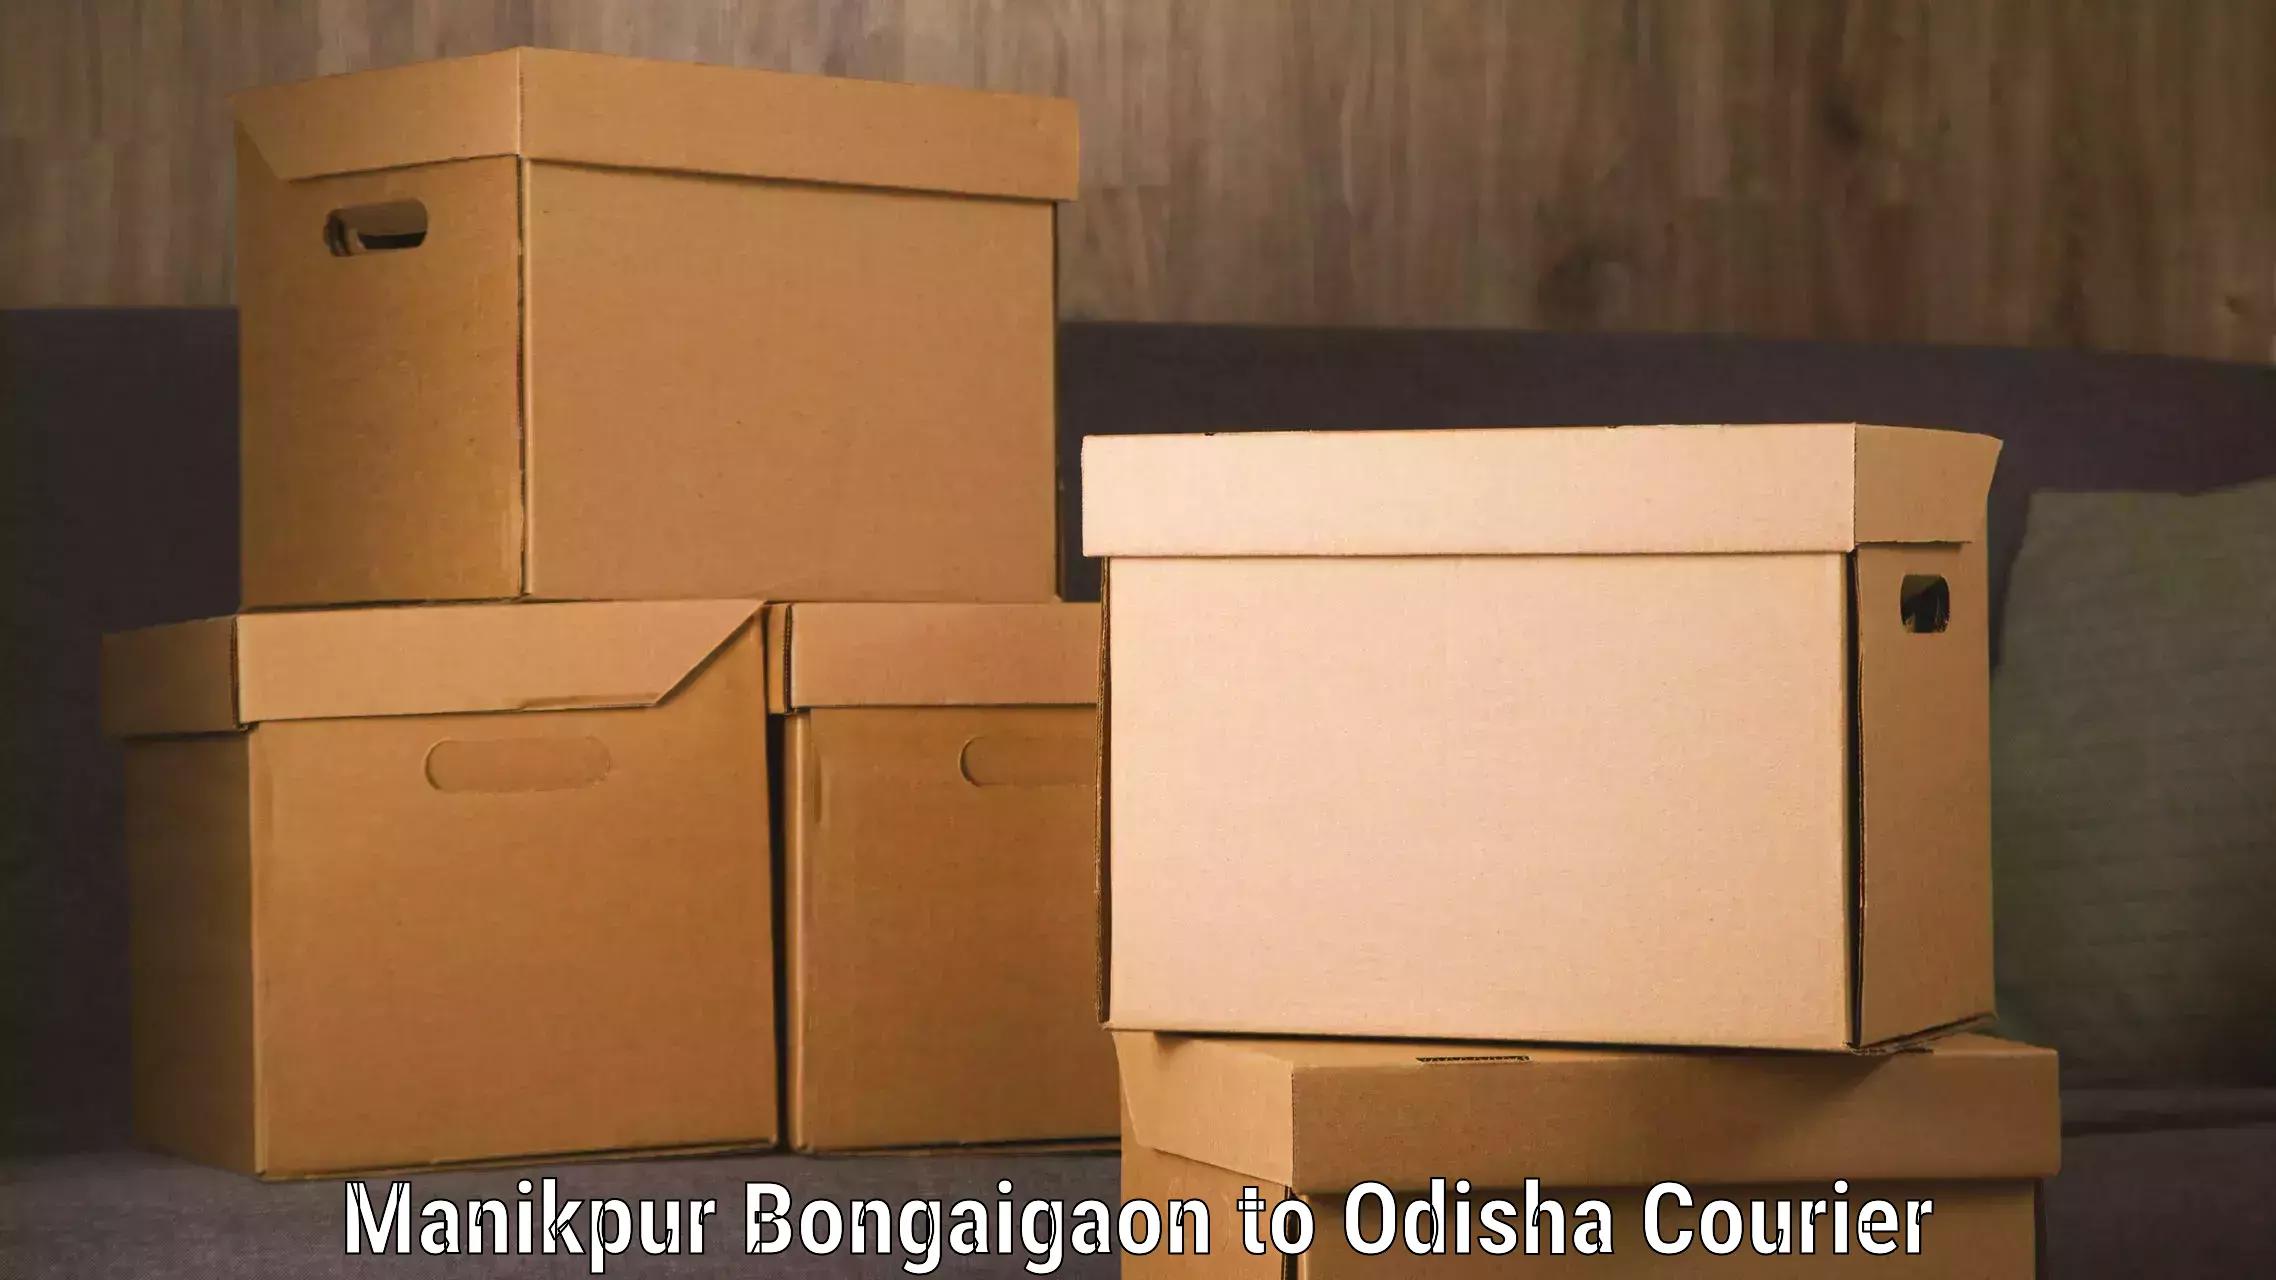 Luggage shipping specialists Manikpur Bongaigaon to Babujang